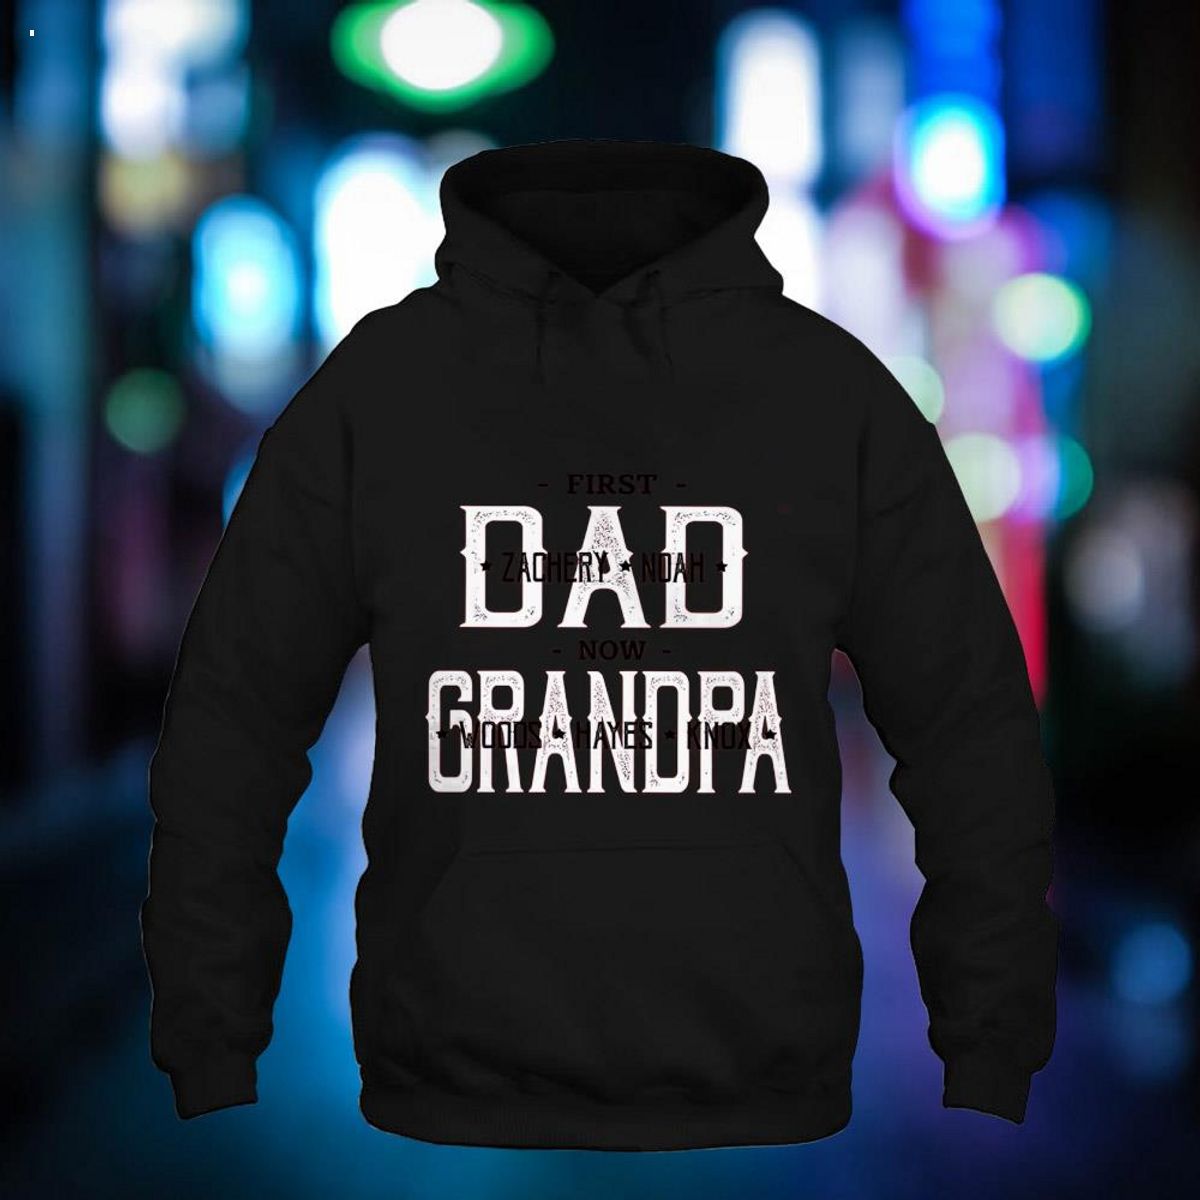 Lovelypod - First Dad Now Grandpa Shirt